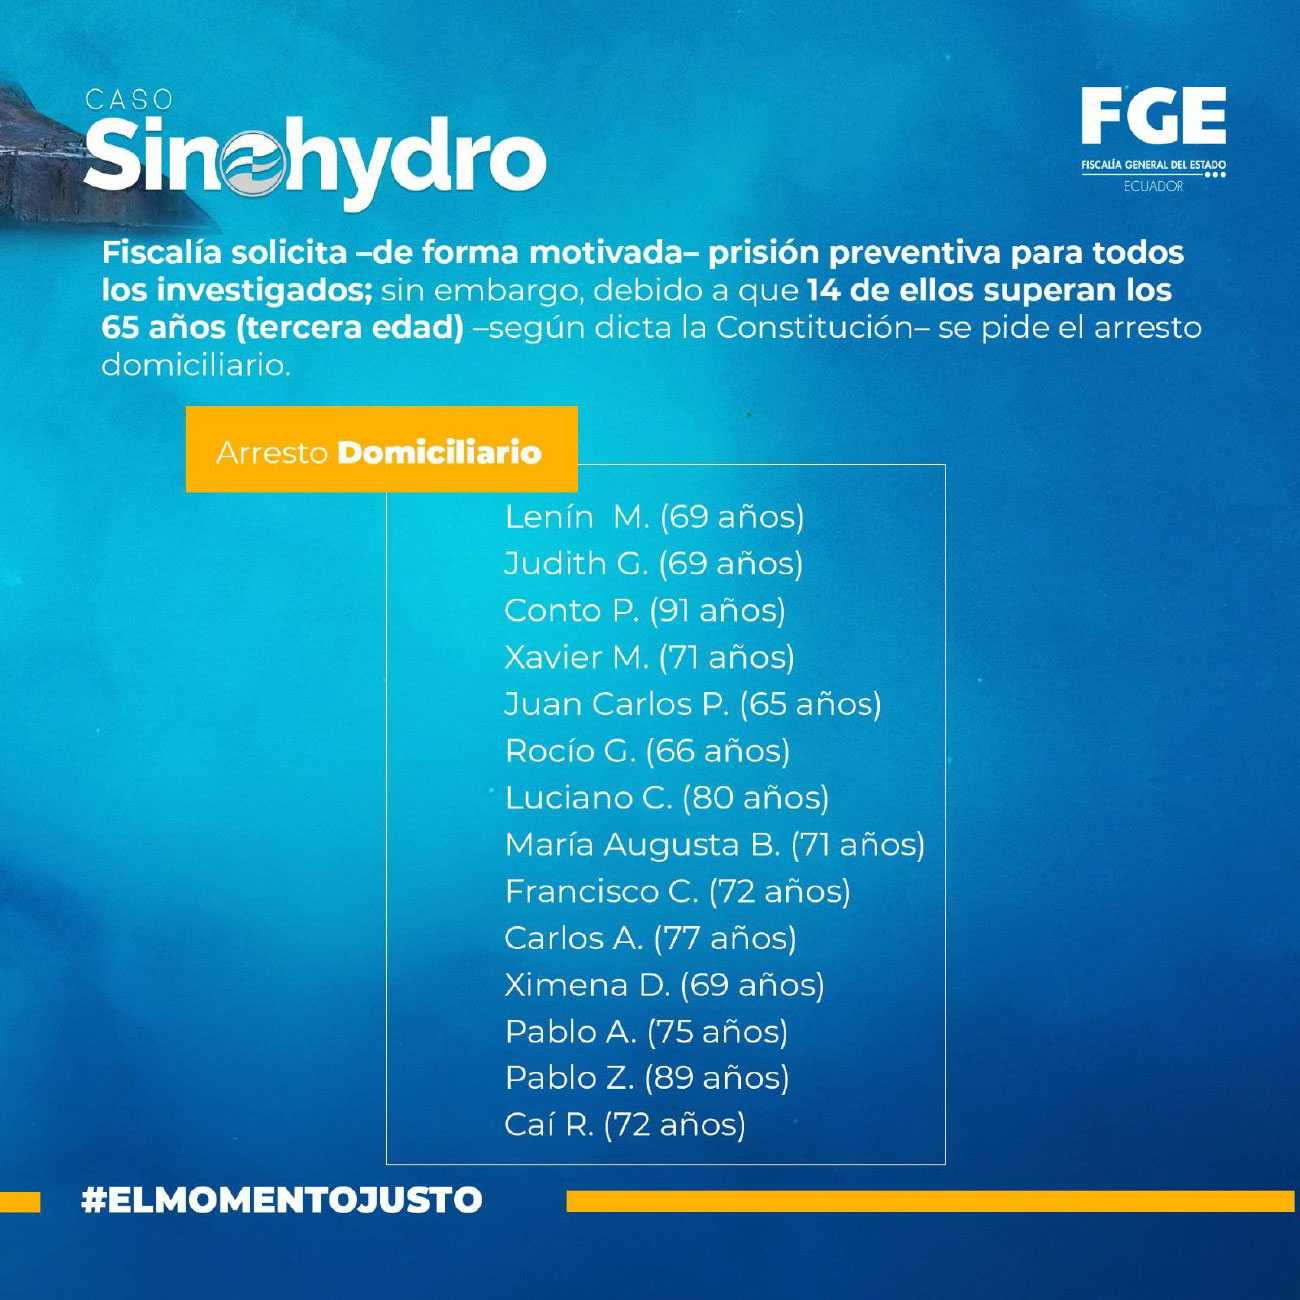 Medidas solicitadas por fiscalía - Caso Sinohydro